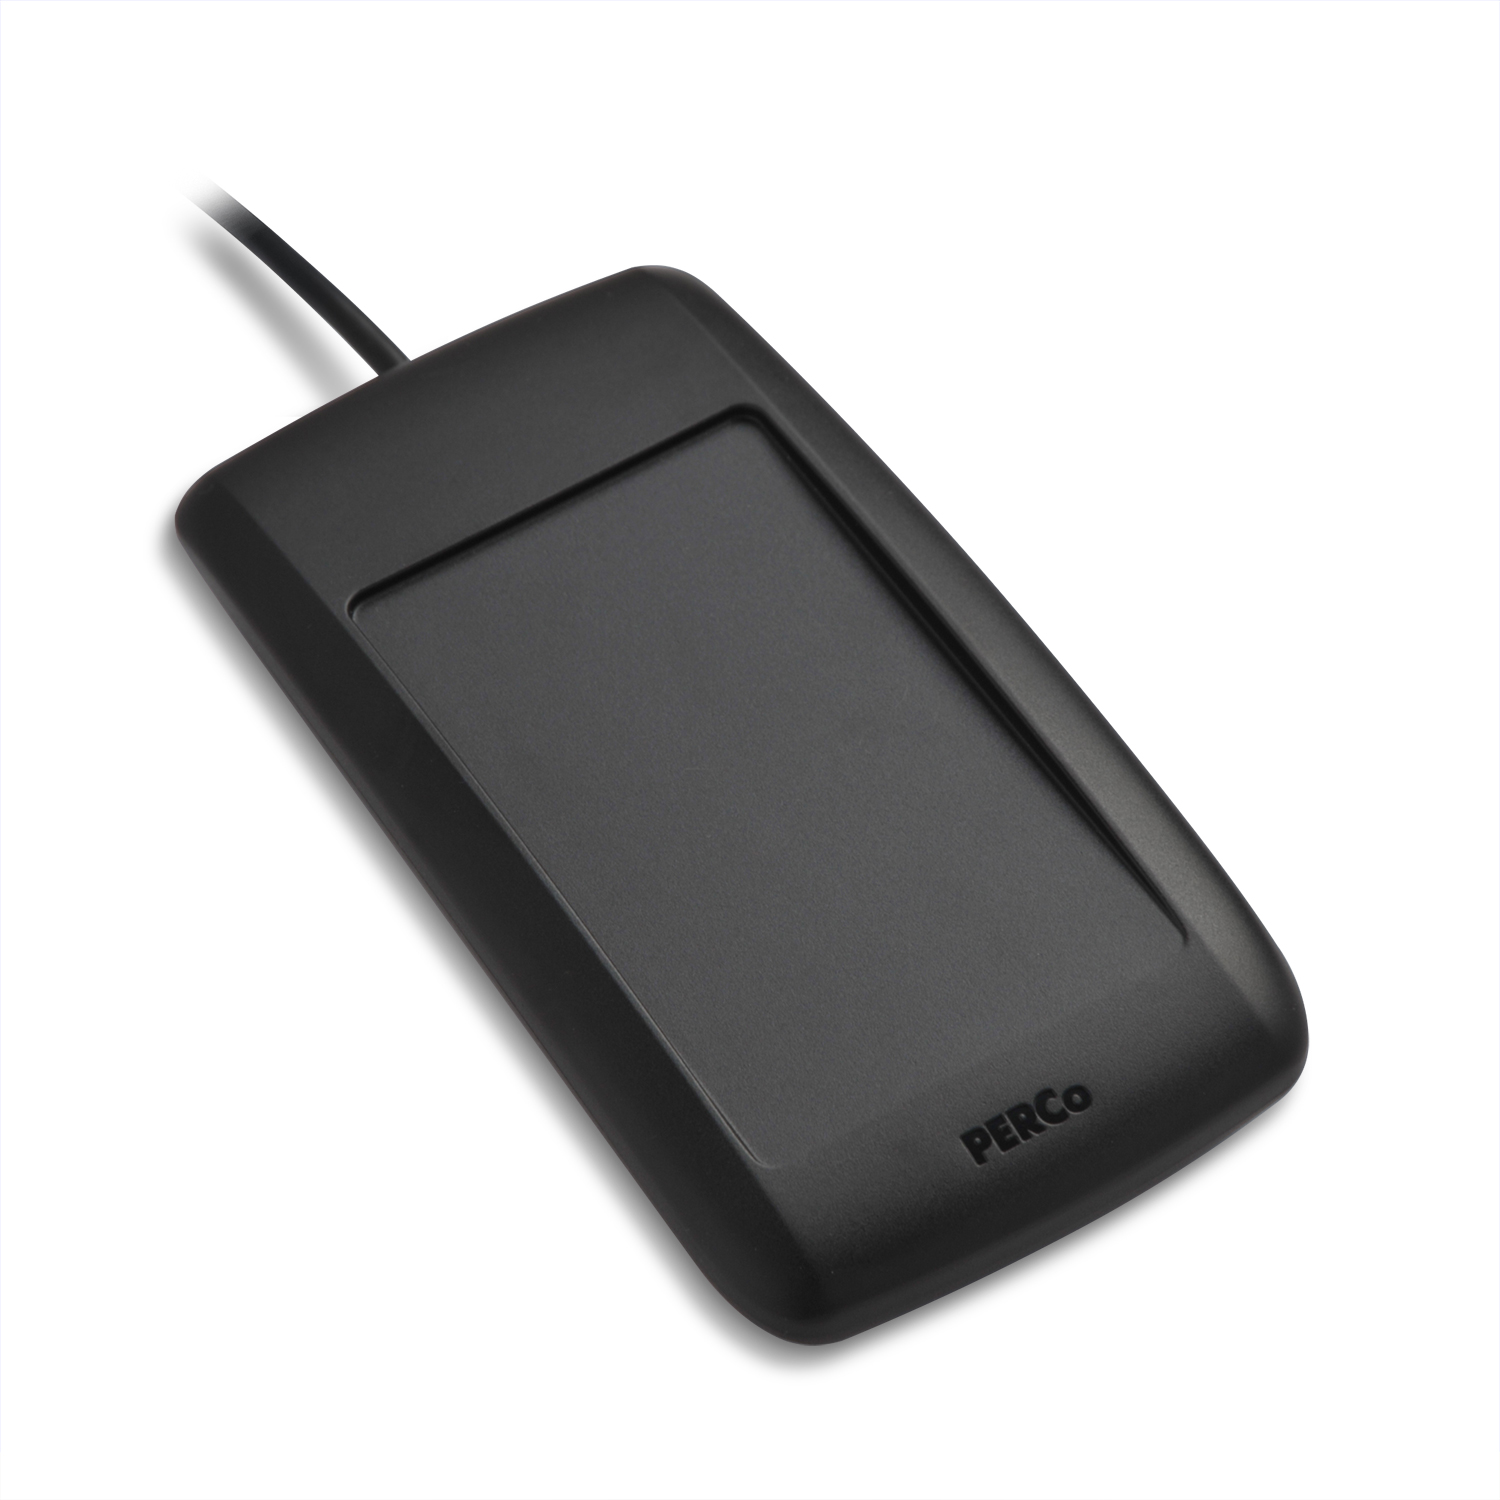 PERCo-IR03.1D Считыватель бесконтактных карт формата ЕММ/HID, интерфейс связи - RS-485